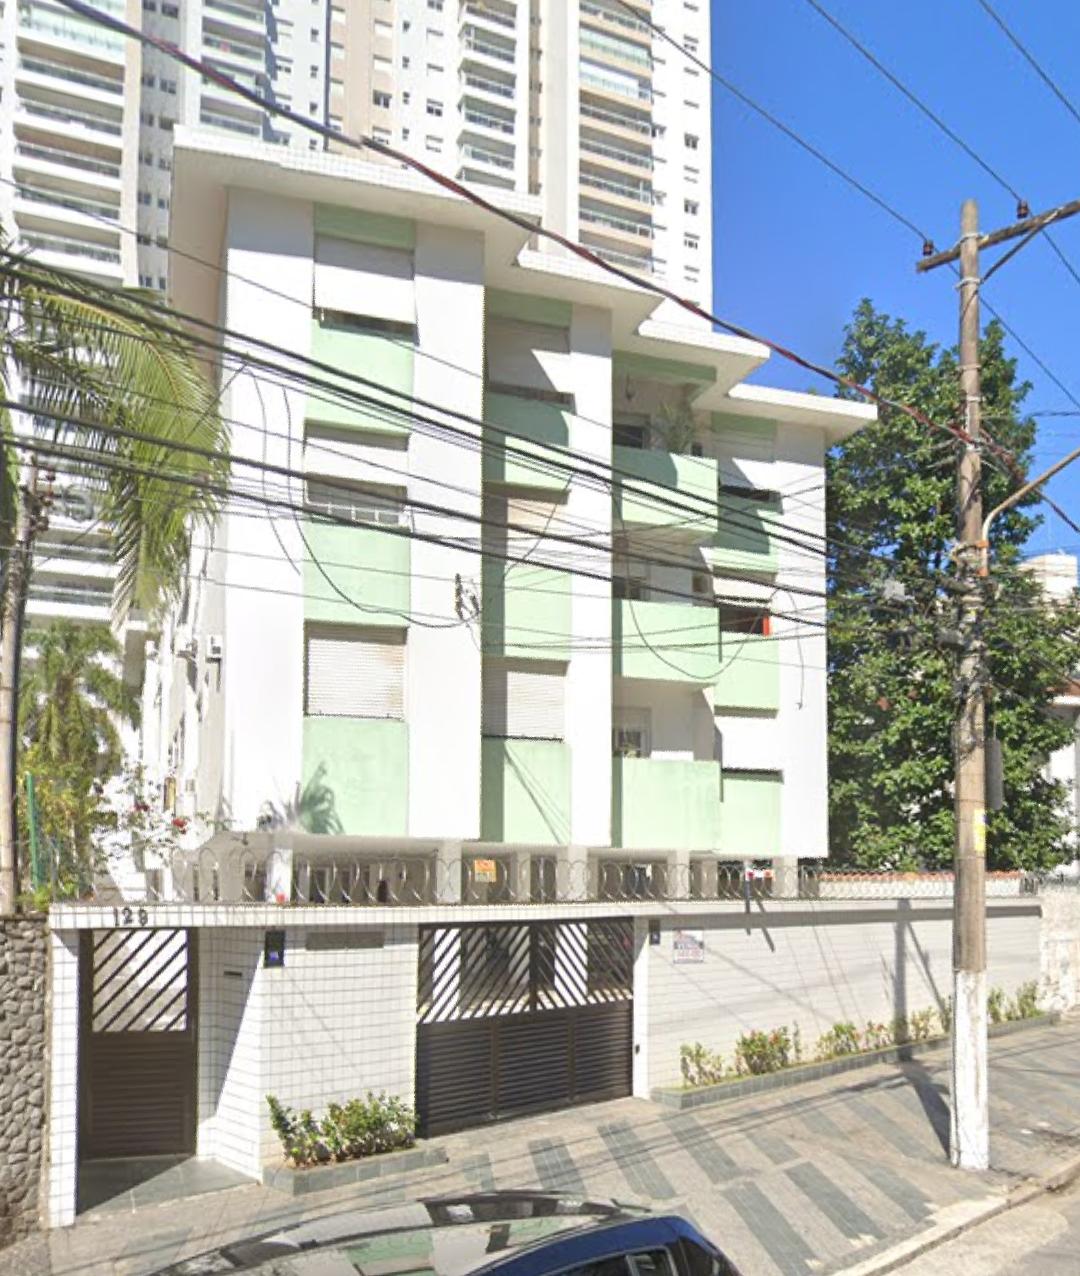 DIREITOS - Apart. 2 dorms. c/ área útil de 71,57 m² - Edif. Branca Moreira